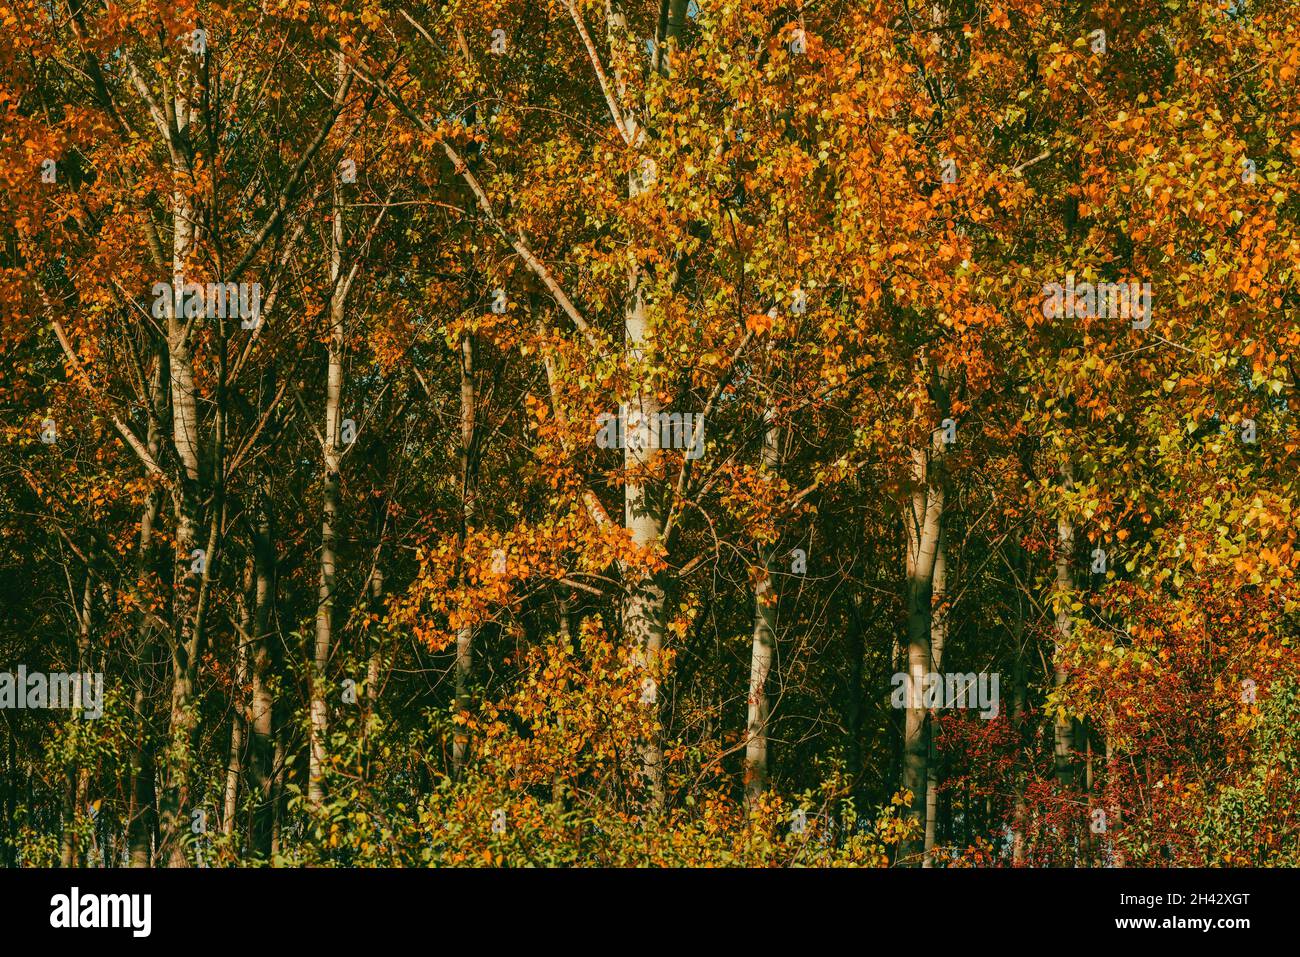 Herbstsaison und Schönheit in der Natur, schöne Pappelwaldlandschaft im oktober, orangefarbene Blätter auf hohen Bäumen Stockfoto